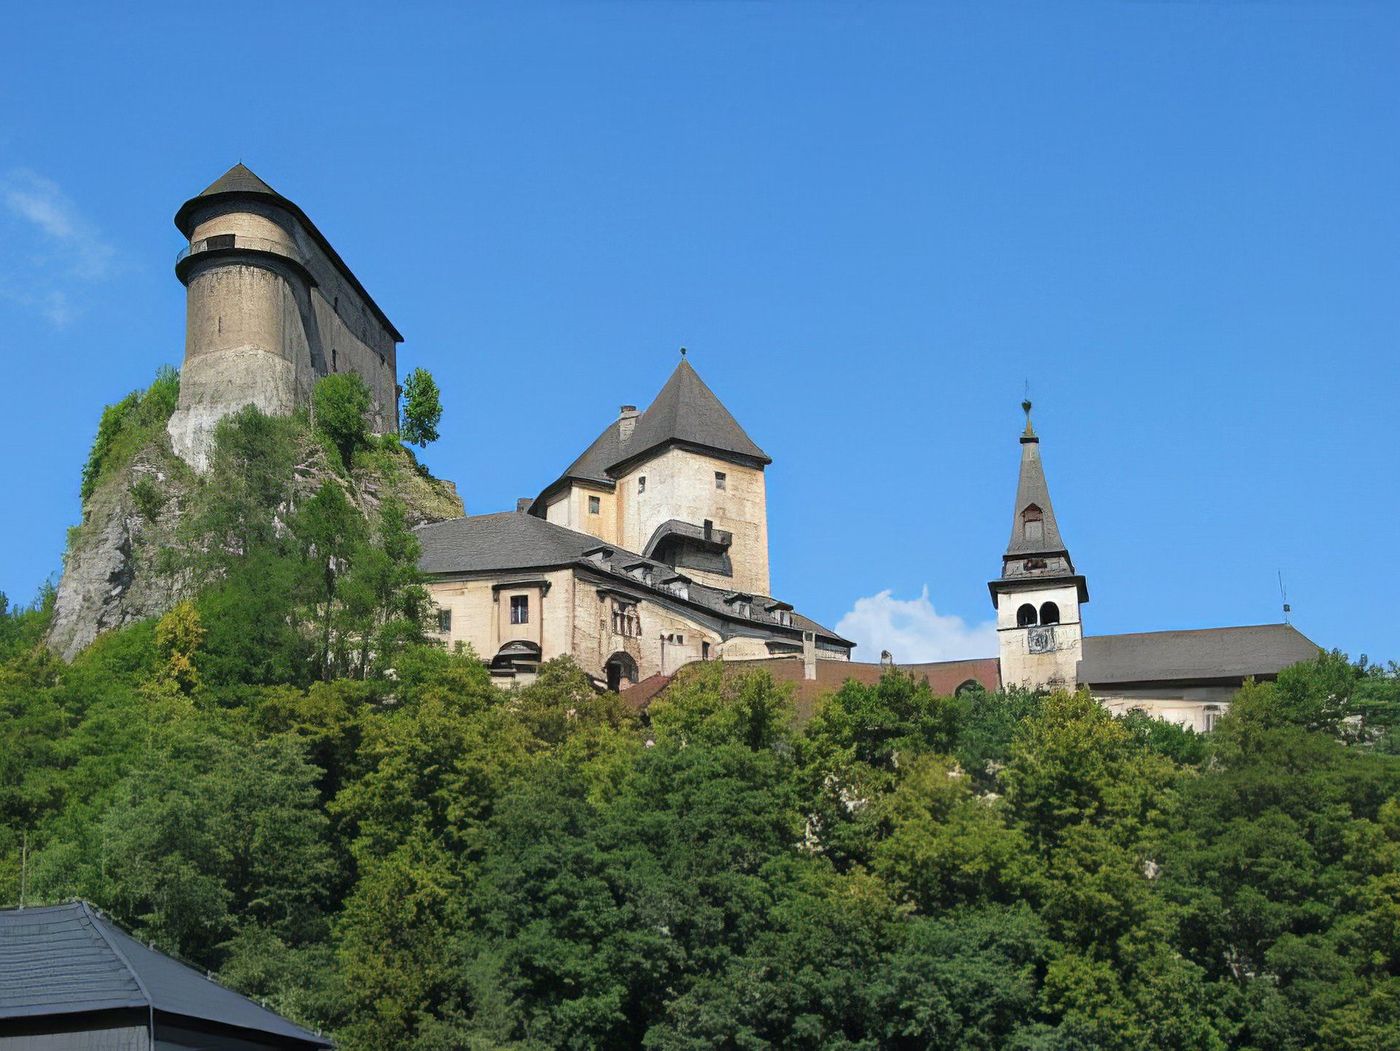 Oravský hrad (Château d'Oravský Podzámok)